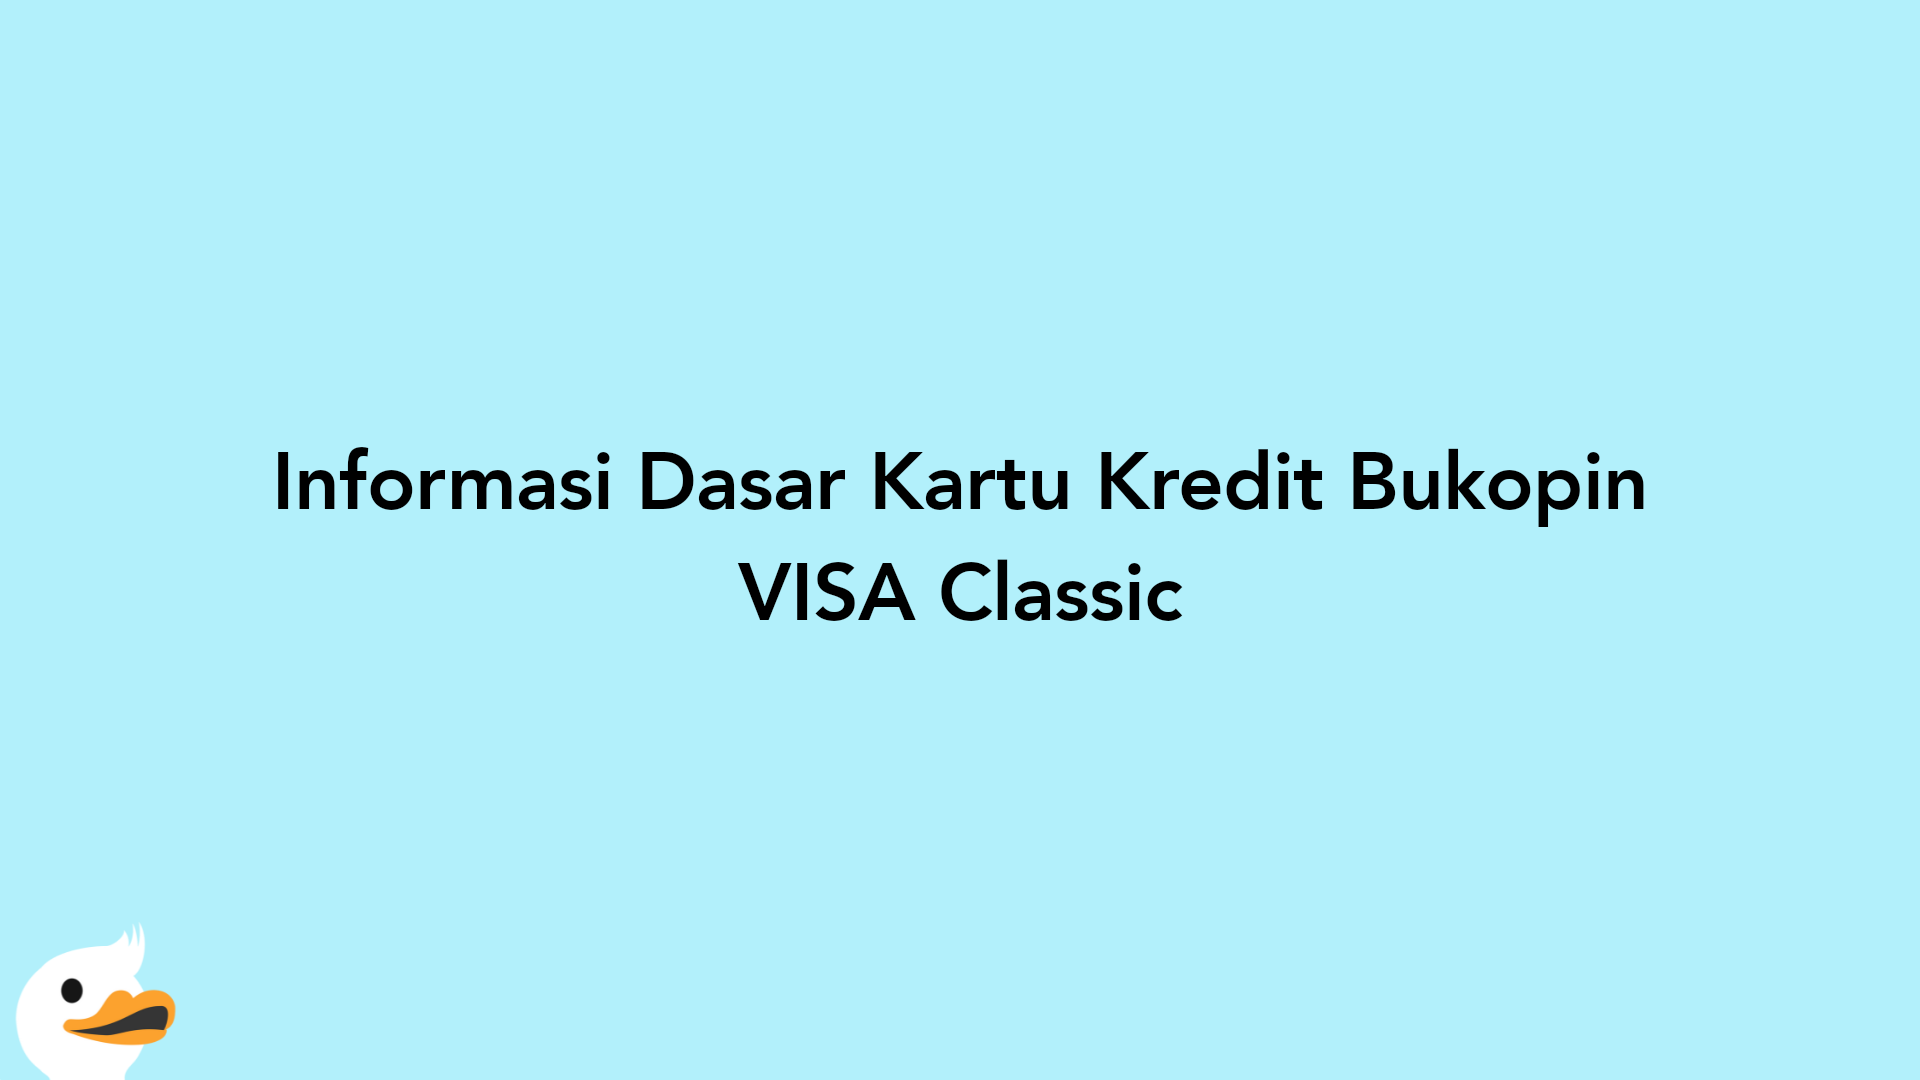 Informasi Dasar Kartu Kredit Bukopin VISA Classic